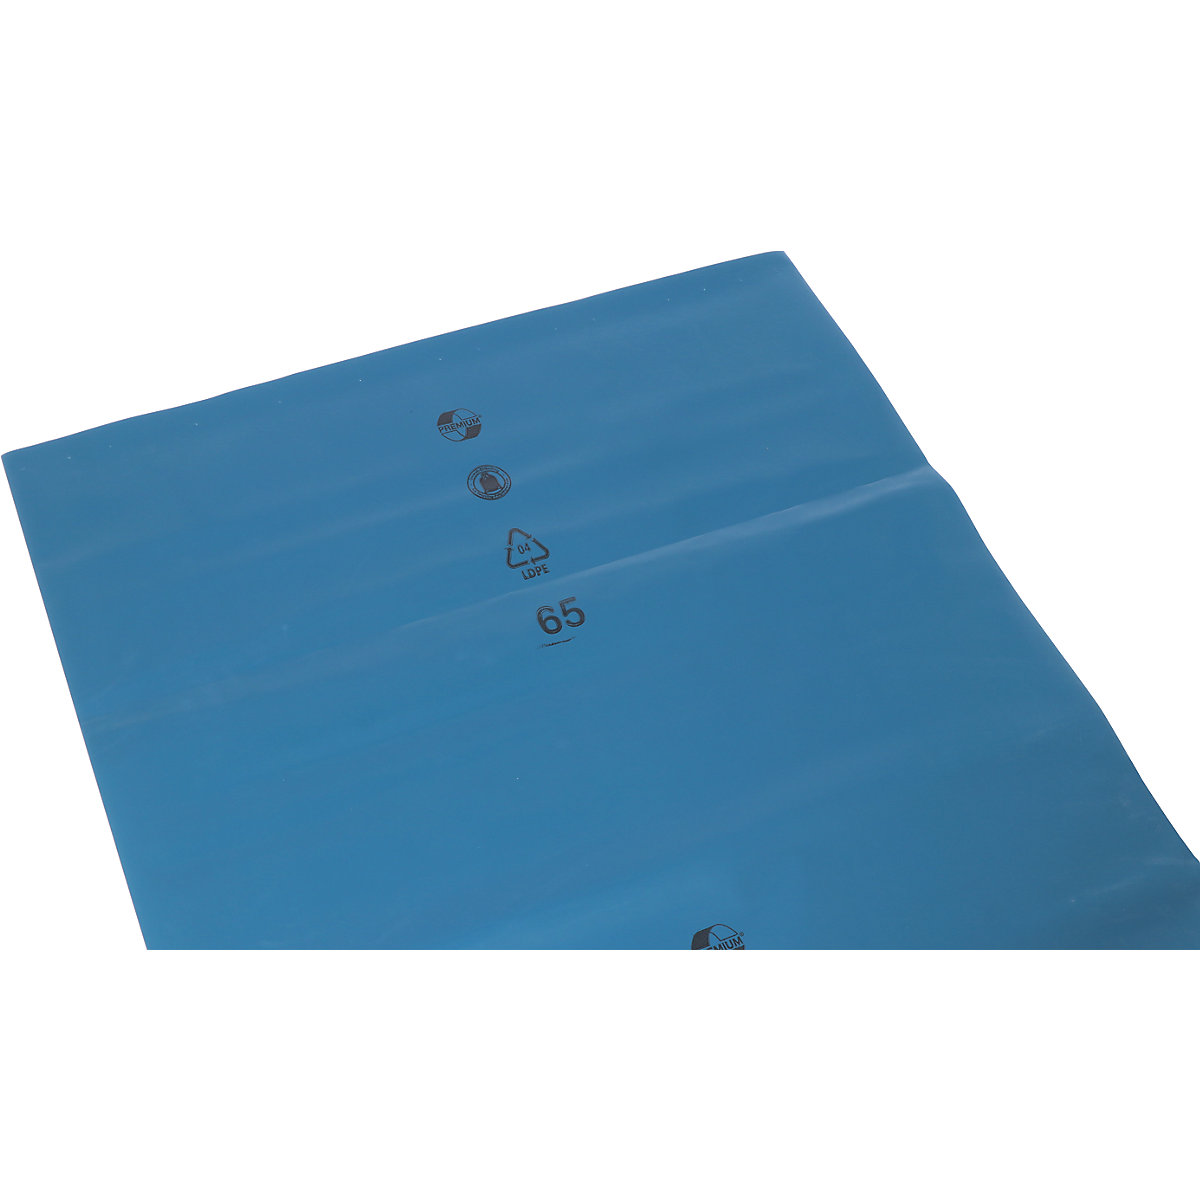 Vreće za teški otpad LDPE, 120 l, ŠxV 700 x 1100 mm, debljina materijala 200 µm, u plavoj boji, pak. 100 kom.-4